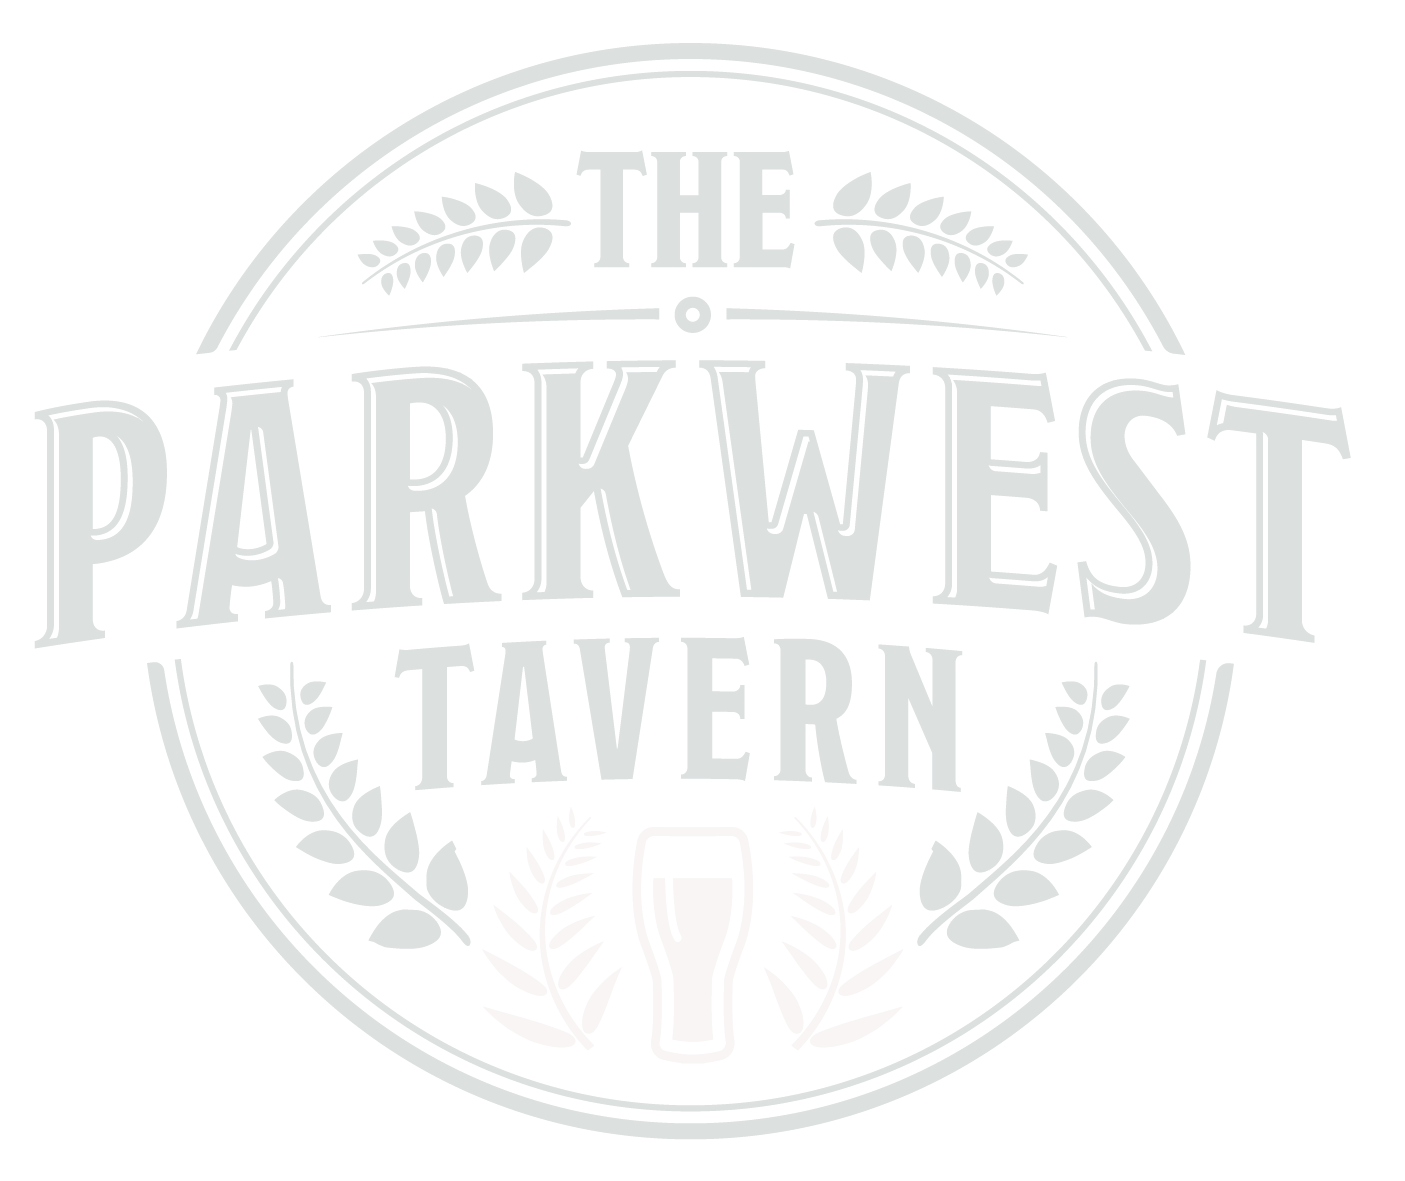 Parkwest Tavern 